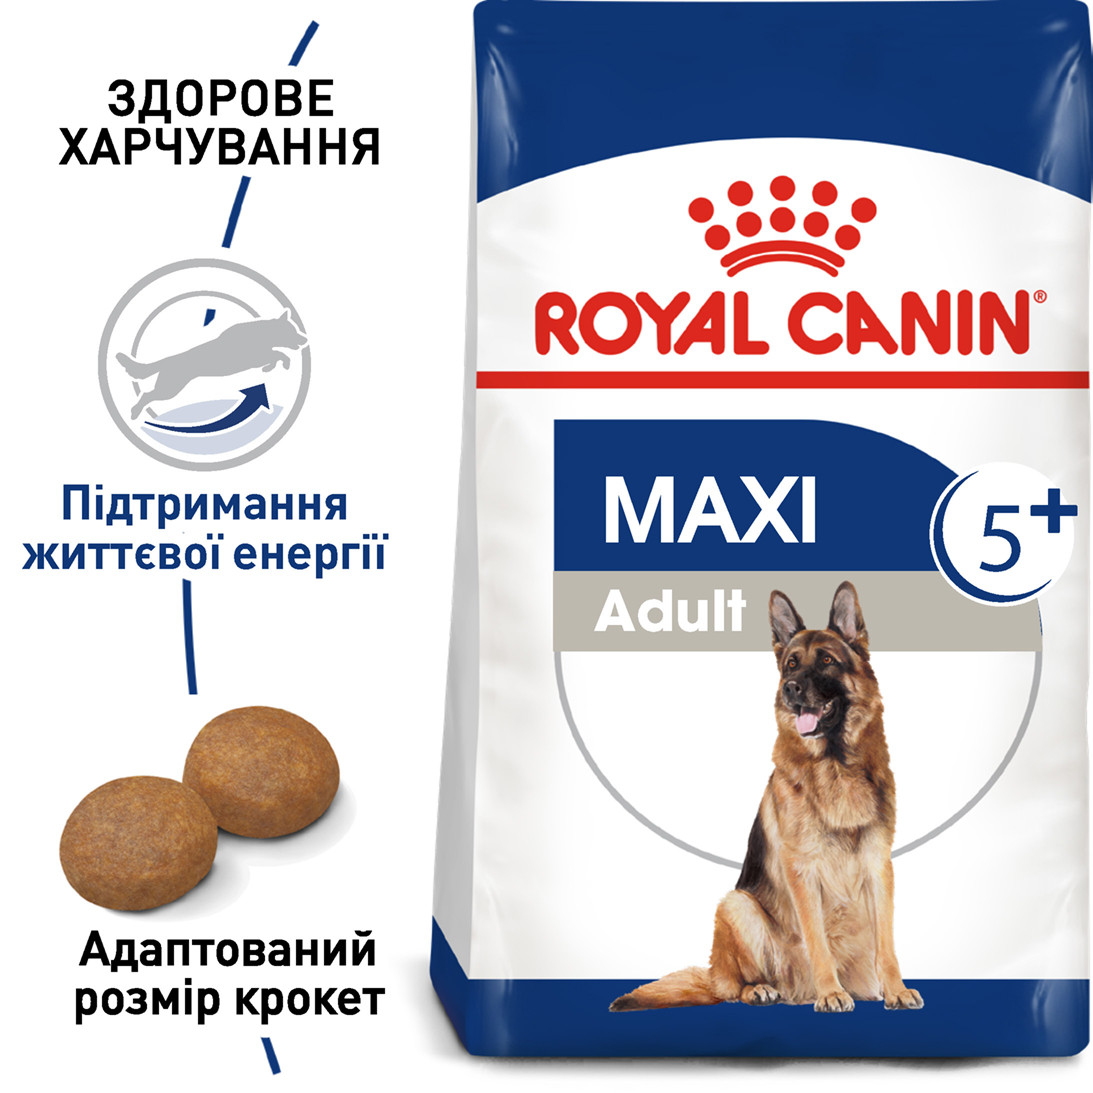 Royal Canin Maxi Adult 5+ сухий корм для собак великих порід від 5 років, 15КГ, фото 1